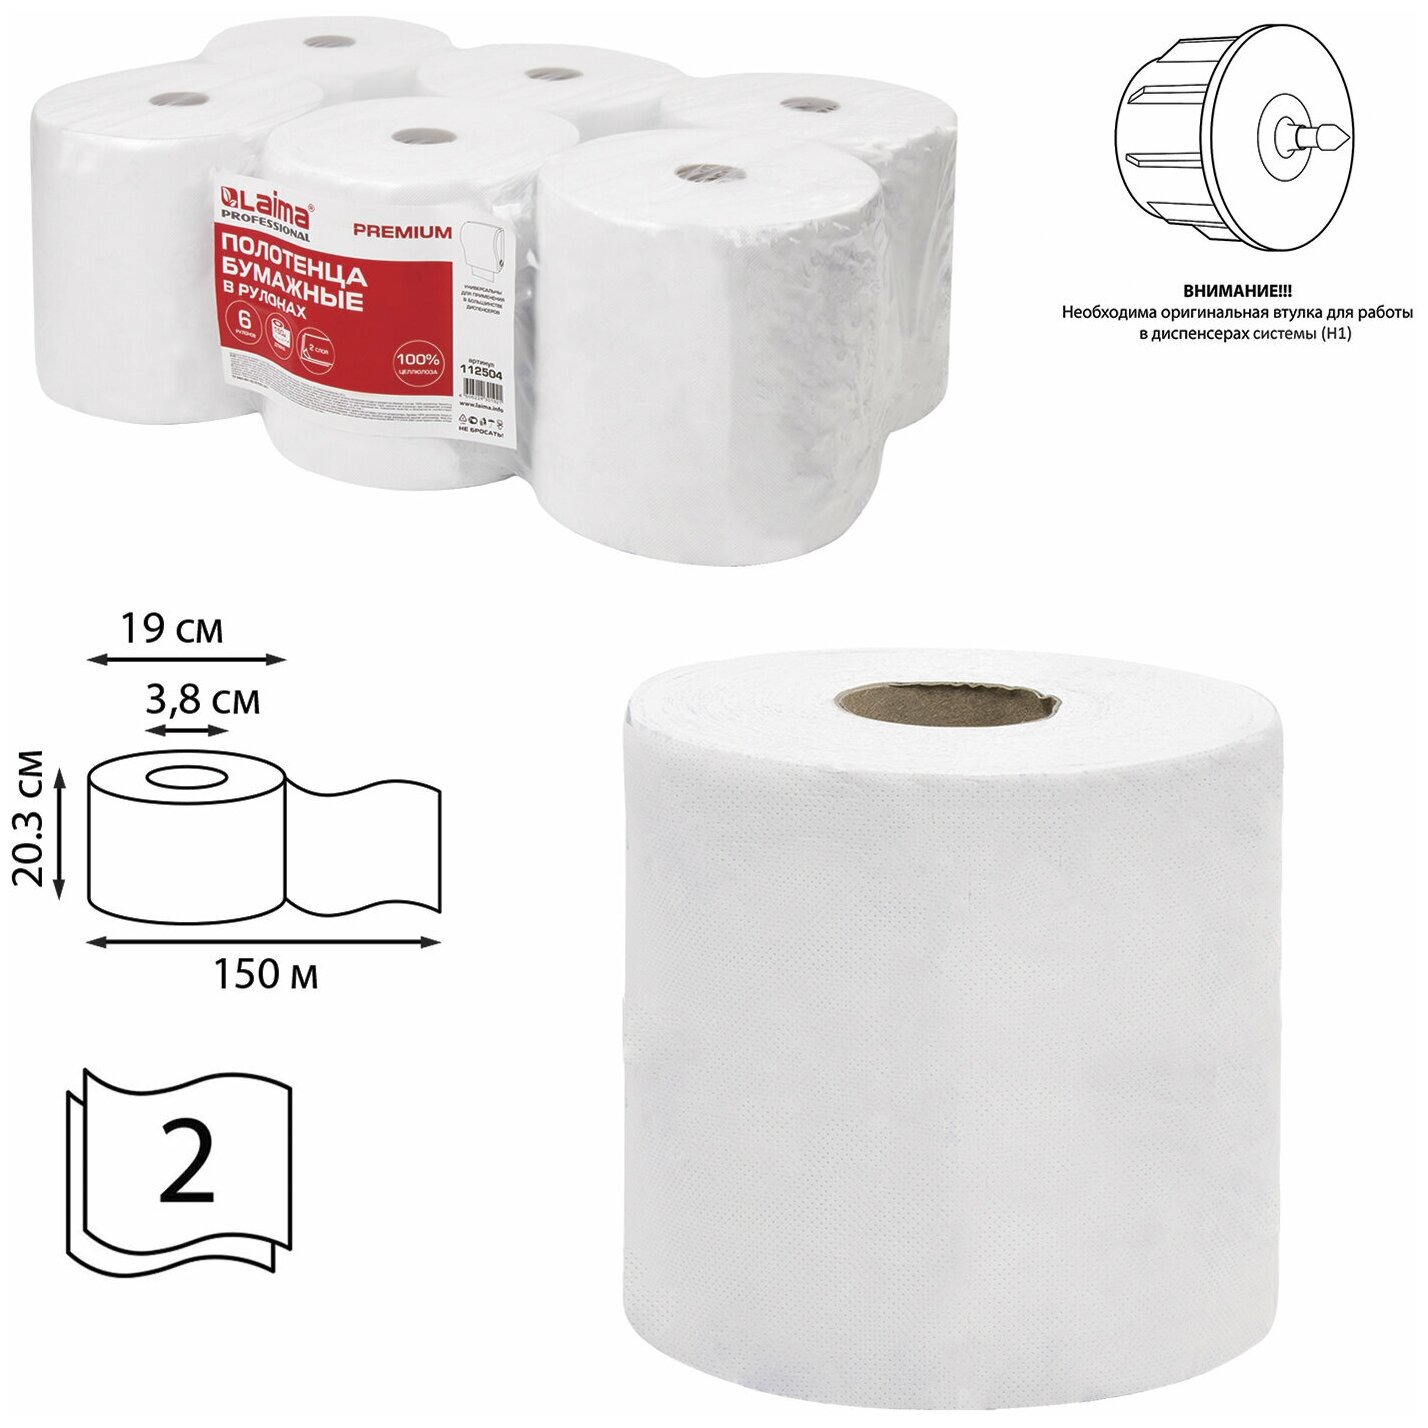 Полотенца бумажные Лайма рулонные, 150 м, (Система H1), Premium, 2-слойные, белые с цветным тиснением, 6 рулонов (S230BR406102)